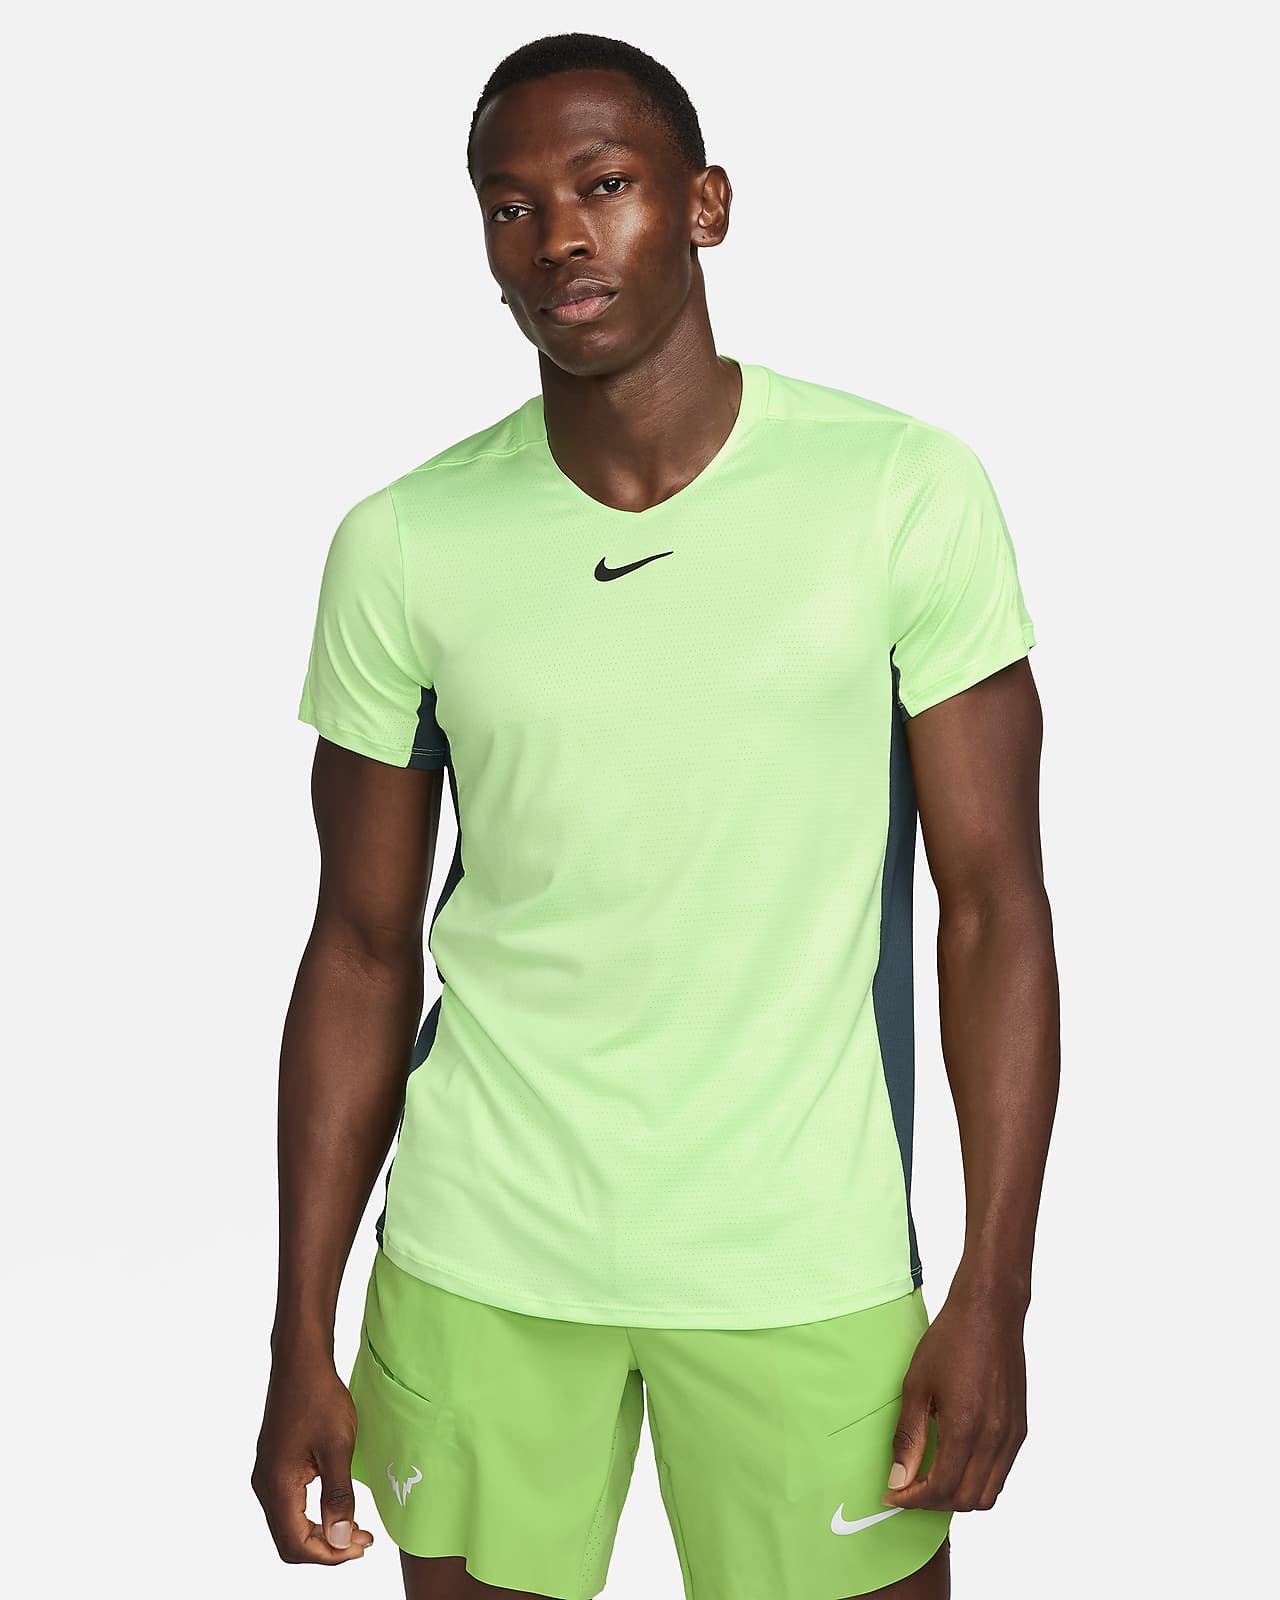 NikeCourt Dri-FIT Advantage Men's Tennis Top. Nike LU